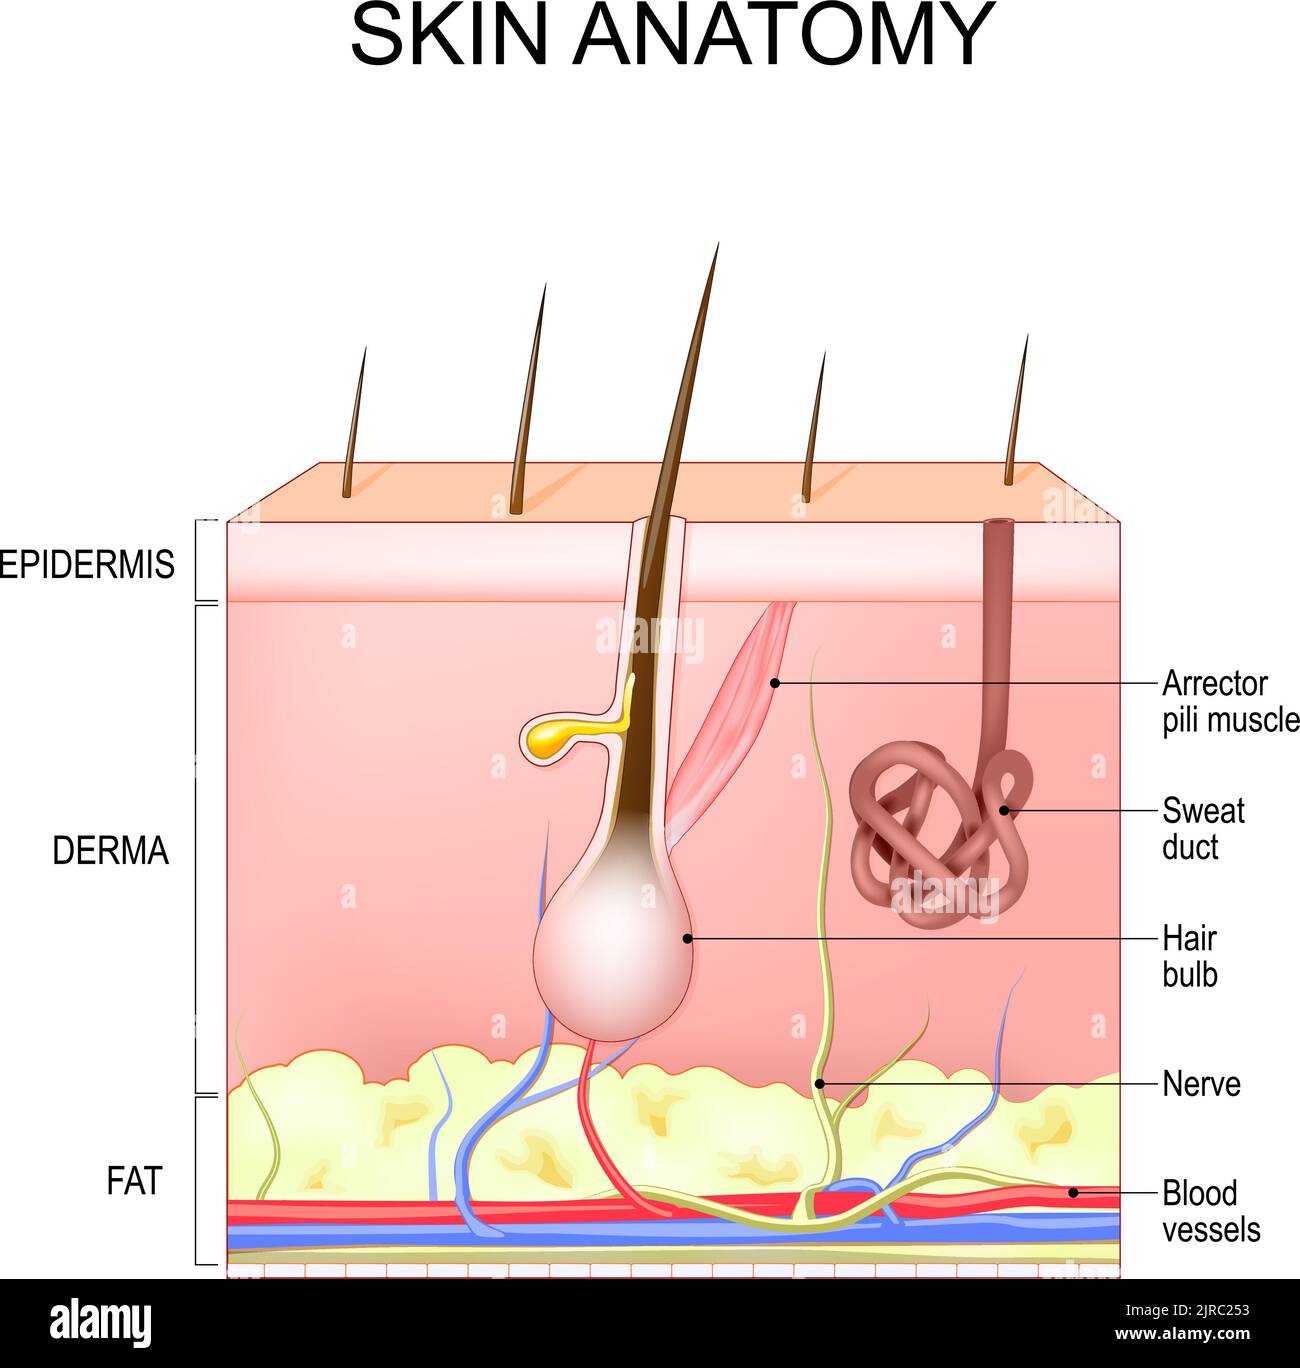 Hautstruktur und Anatomie. Schichten der menschlichen Haut mit Haarfollikel, Schweiß und Talgdrüsen. Epidermis, Dermis, Unterhaut. vektorgrafik Stock Vektor